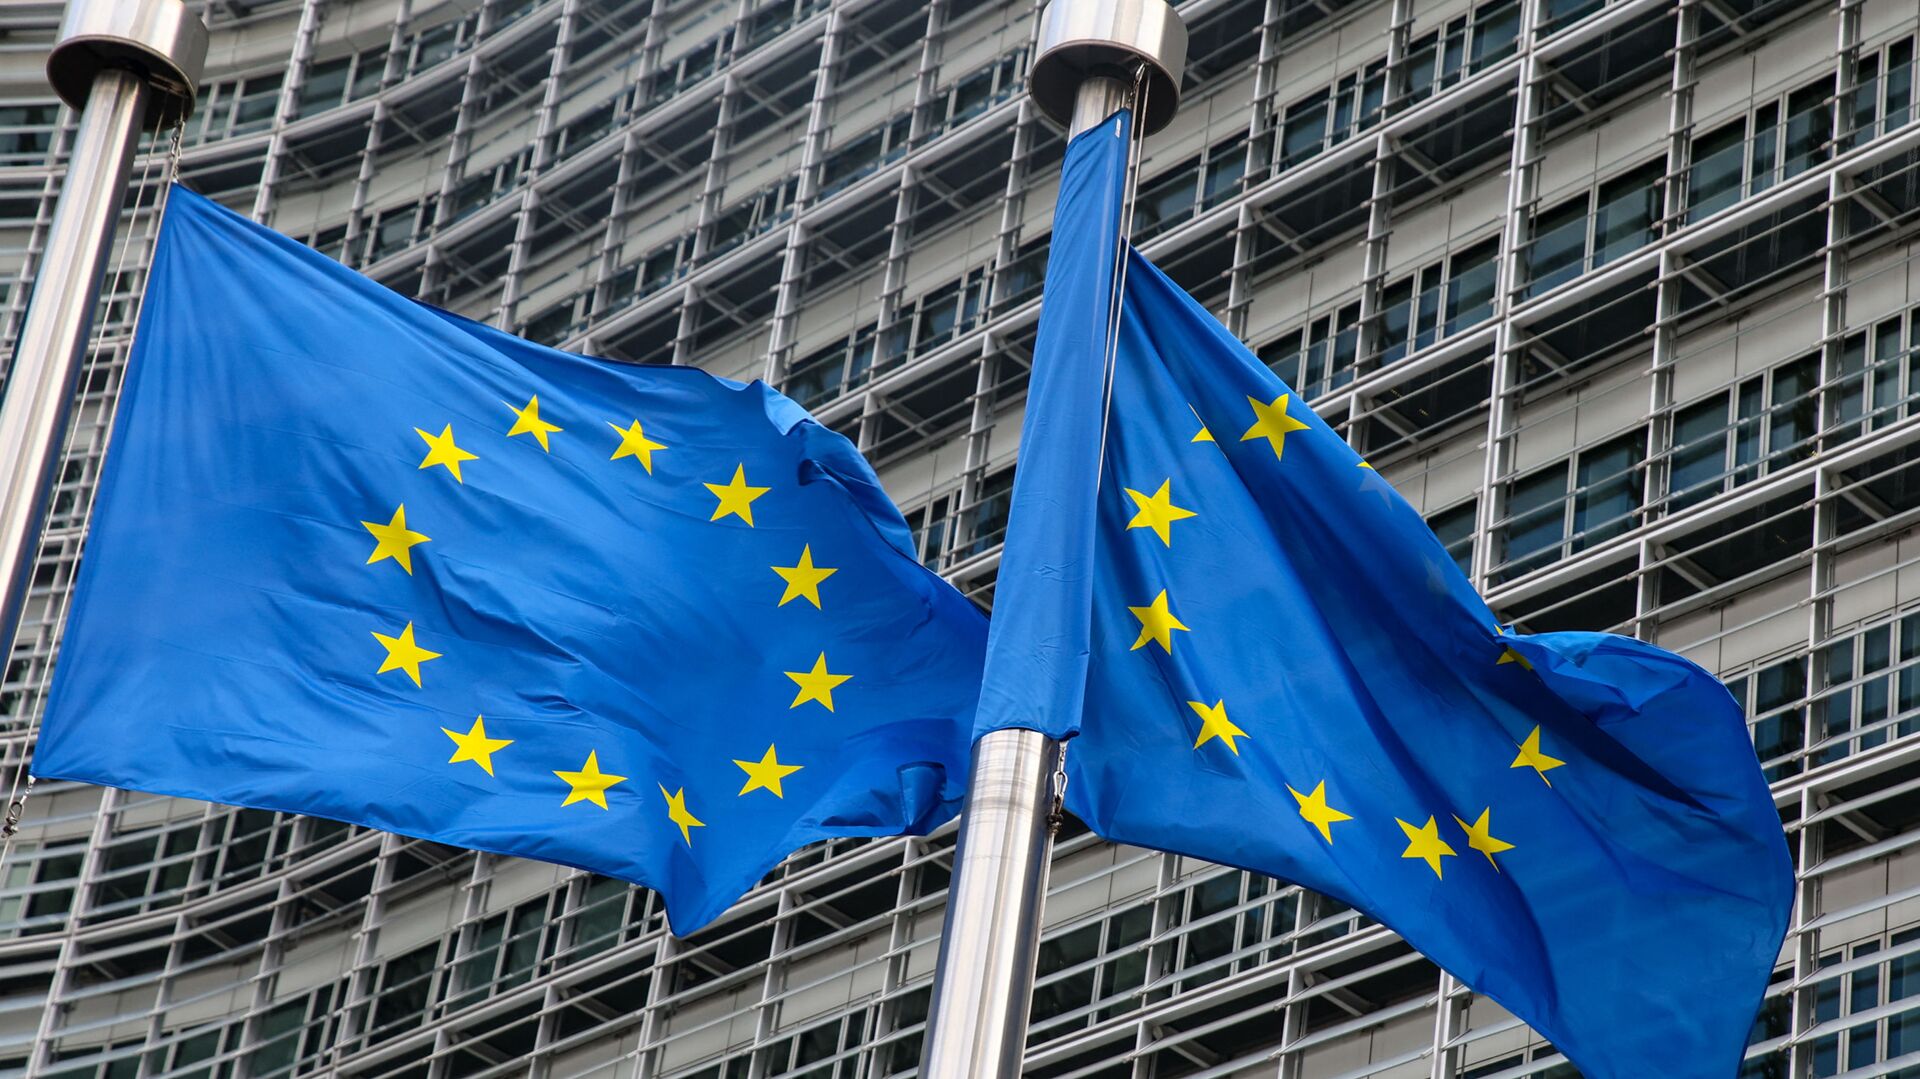 Флаги Европейского союза у штаб-квартиры Европейской комиссии в Брюсселе  - Sputnik Литва, 1920, 24.06.2021